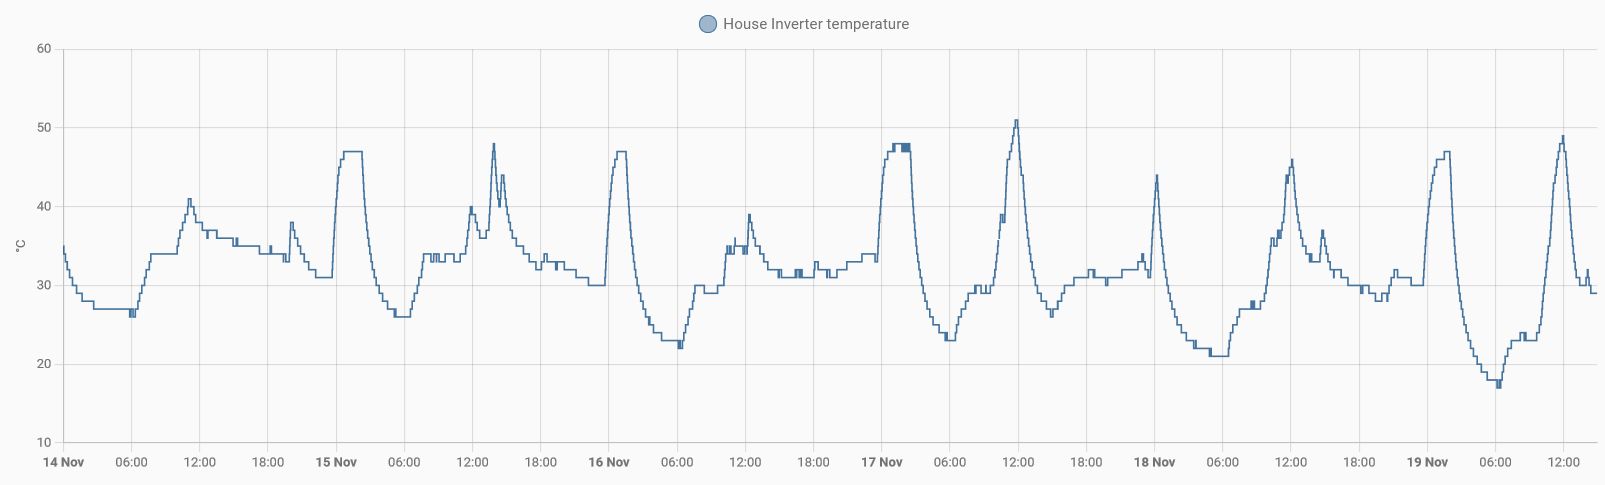 Inverter temperature.jpg